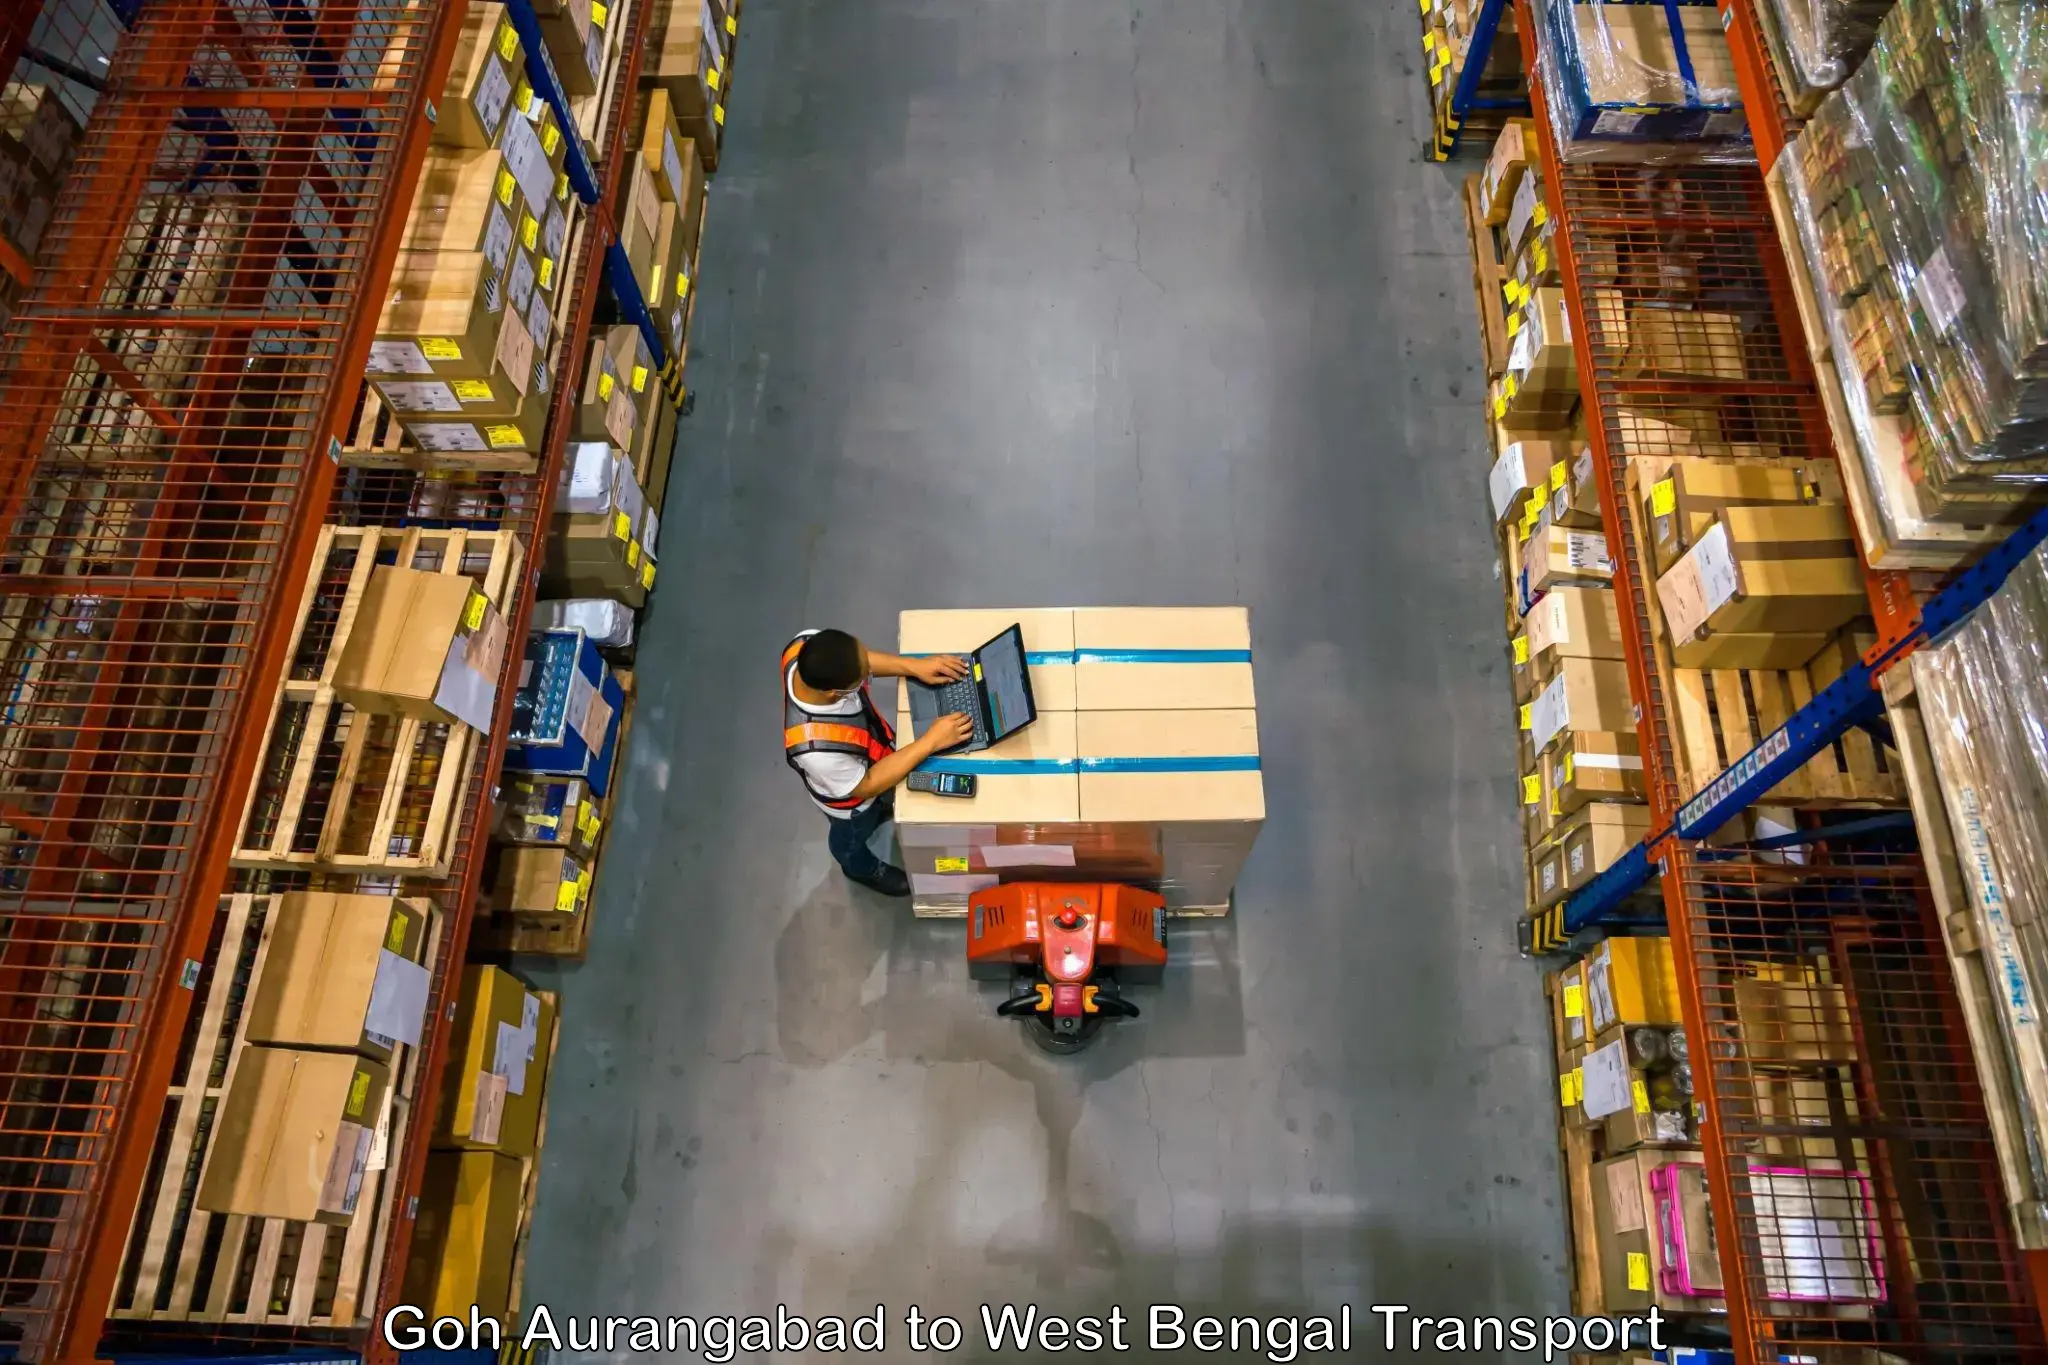 Cargo transport services Goh Aurangabad to Bongaon